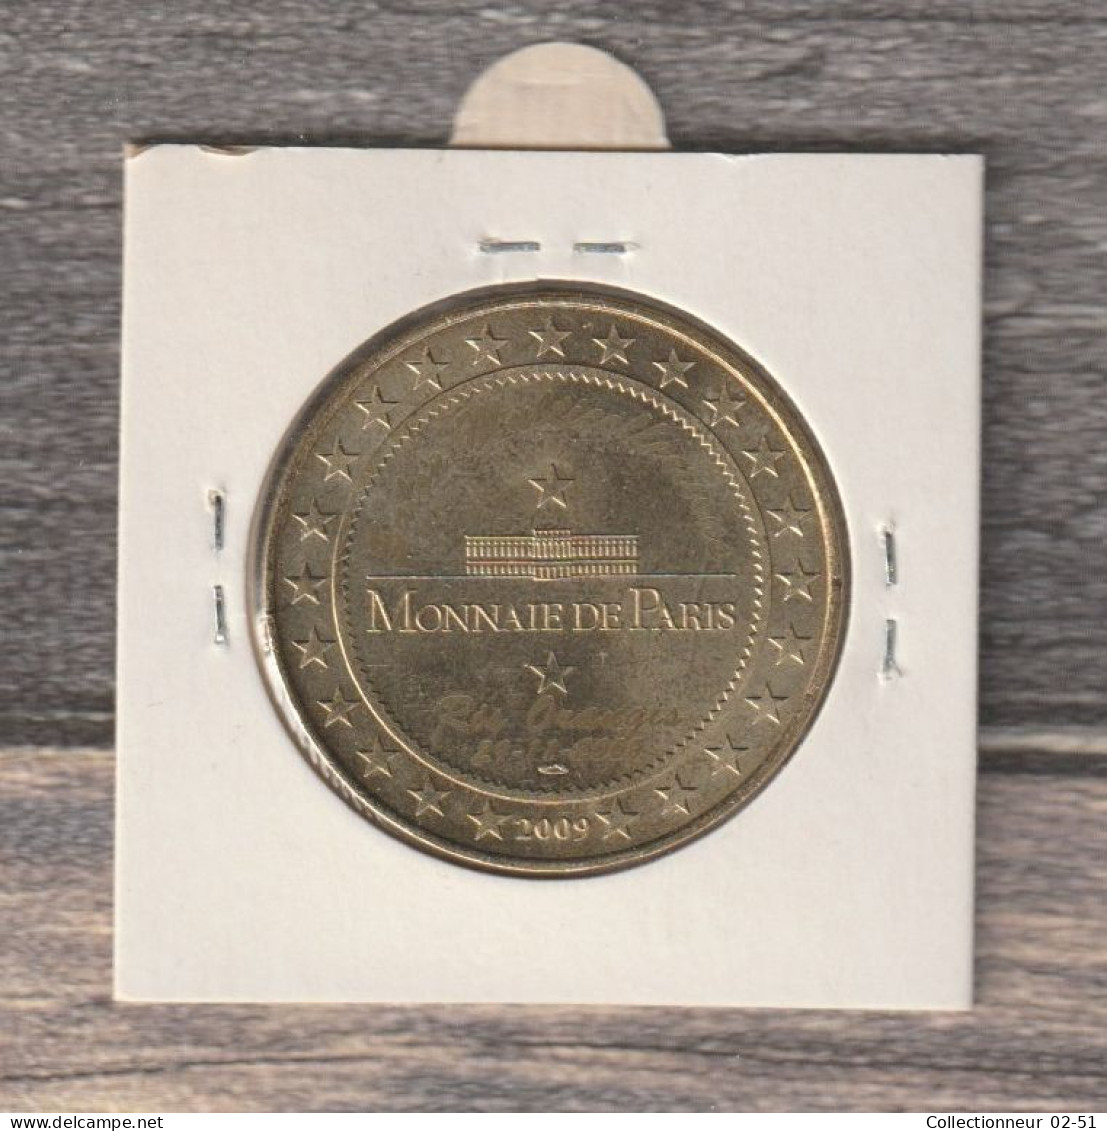 Monnaie De Paris : Médalie (gravure Au Verso) - 2009 - 2009